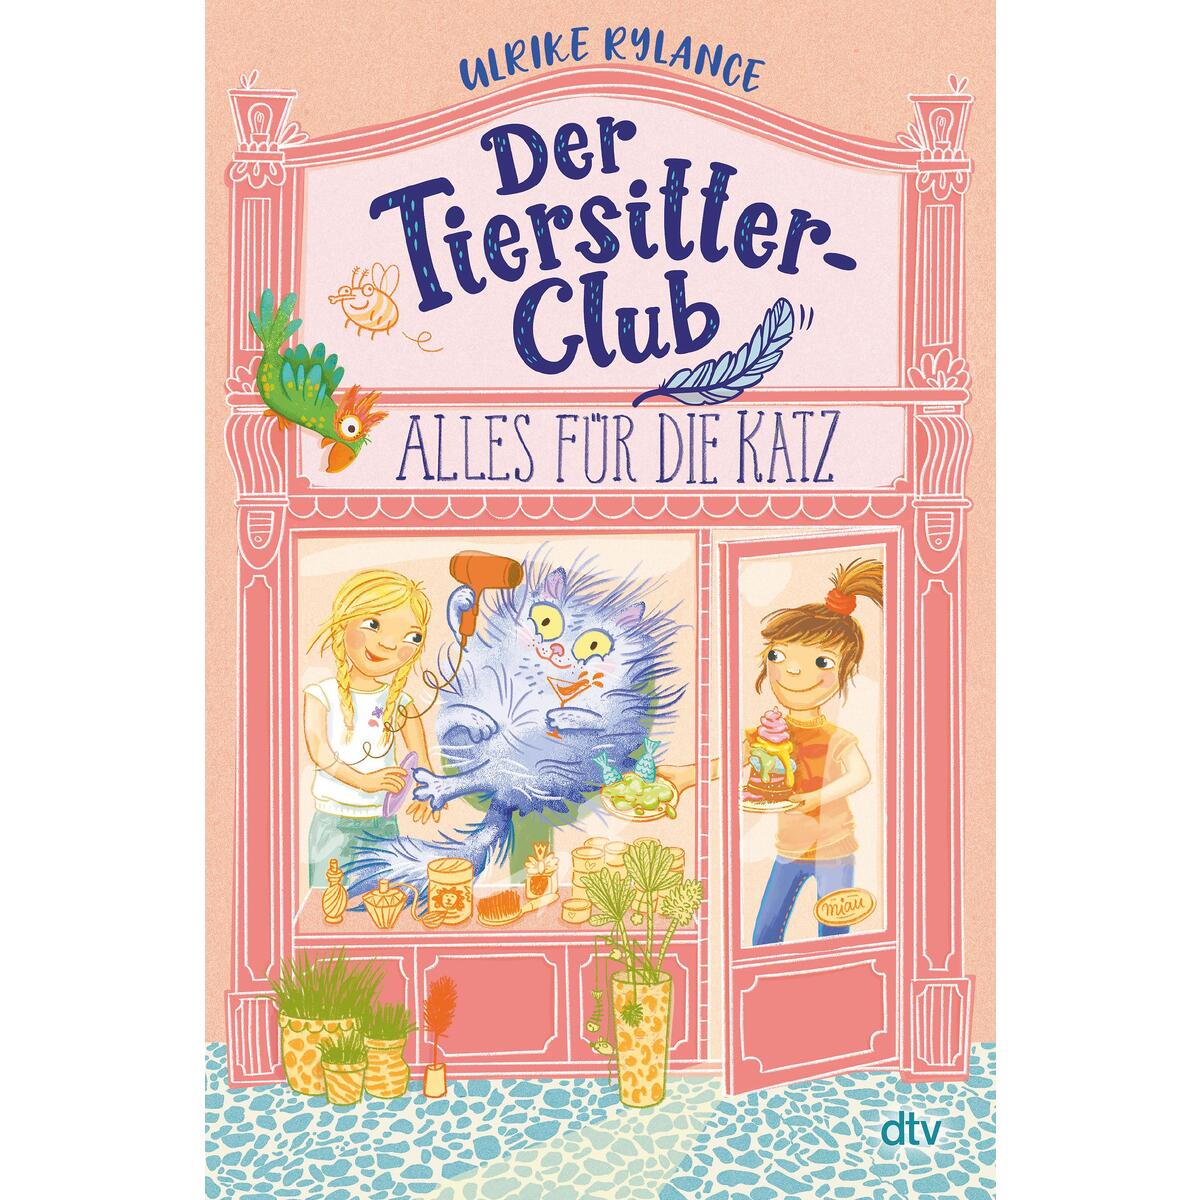 Der Tiersitter-Club - Alles für die Katz von dtv Verlagsgesellschaft